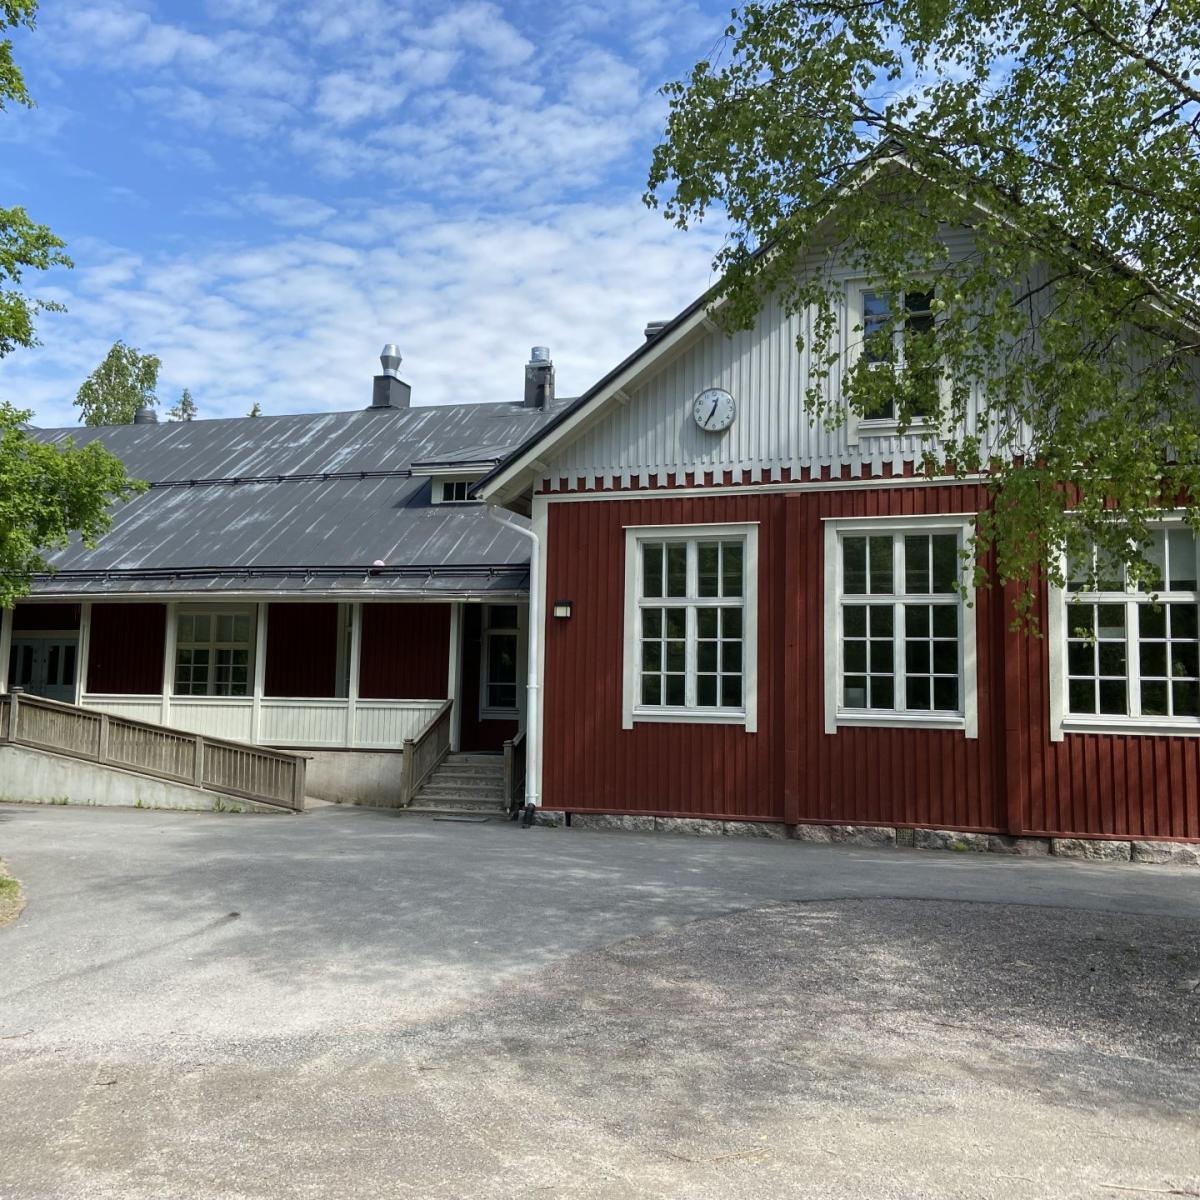 Klemetskog Skola är en svenskspråkig skola i Tusby